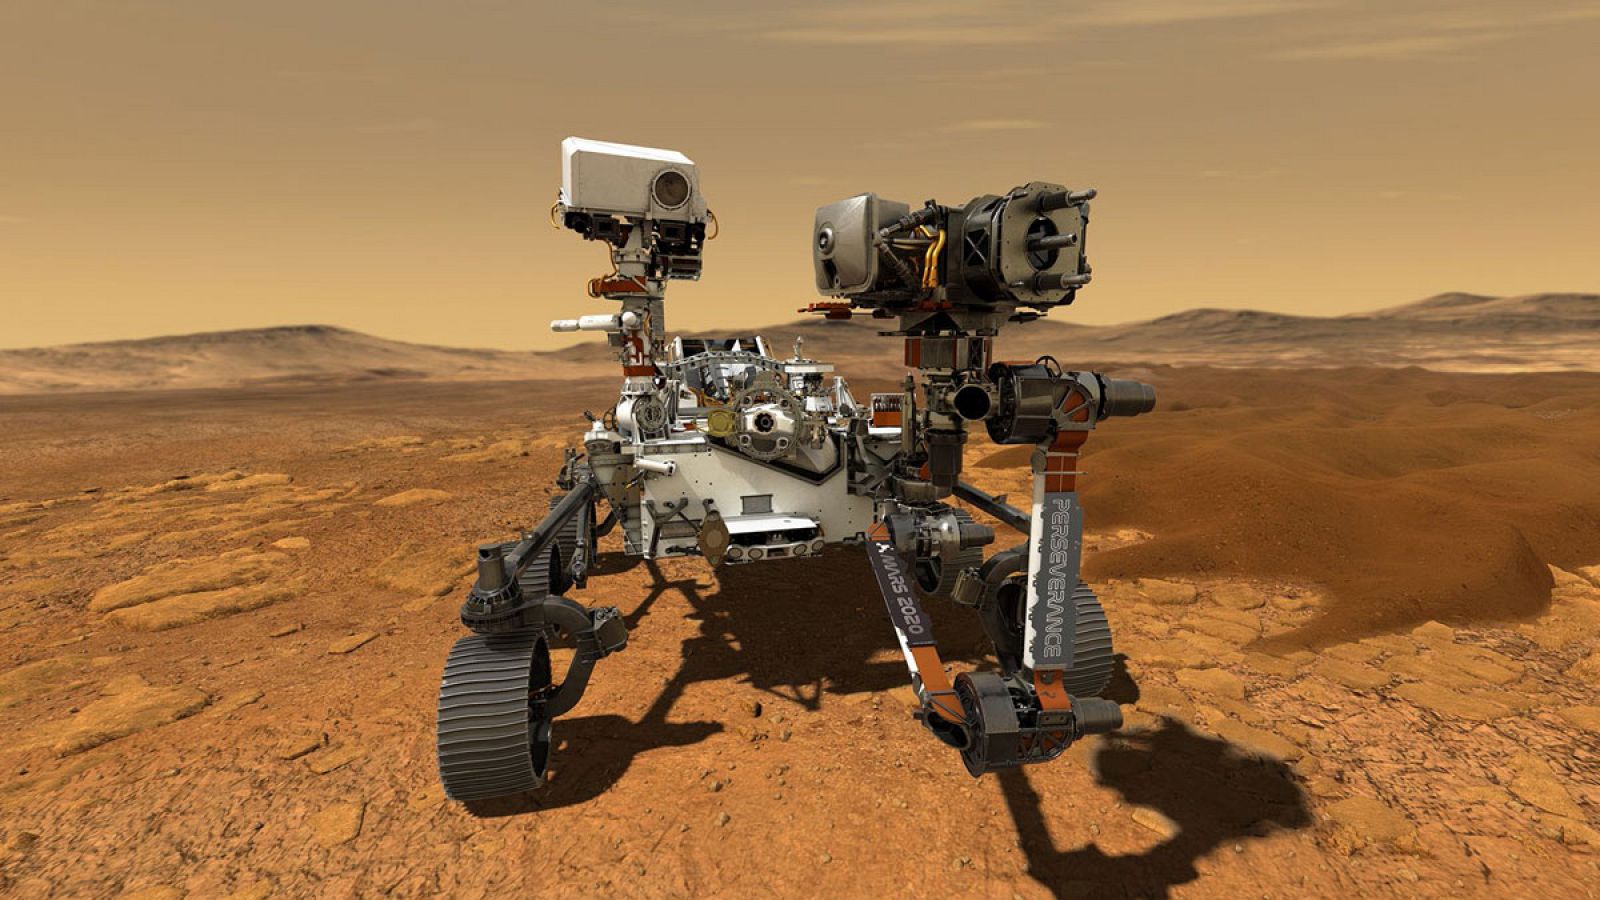 Imagen de Persevance, el próximo róver de la NASA que irá a Marte.